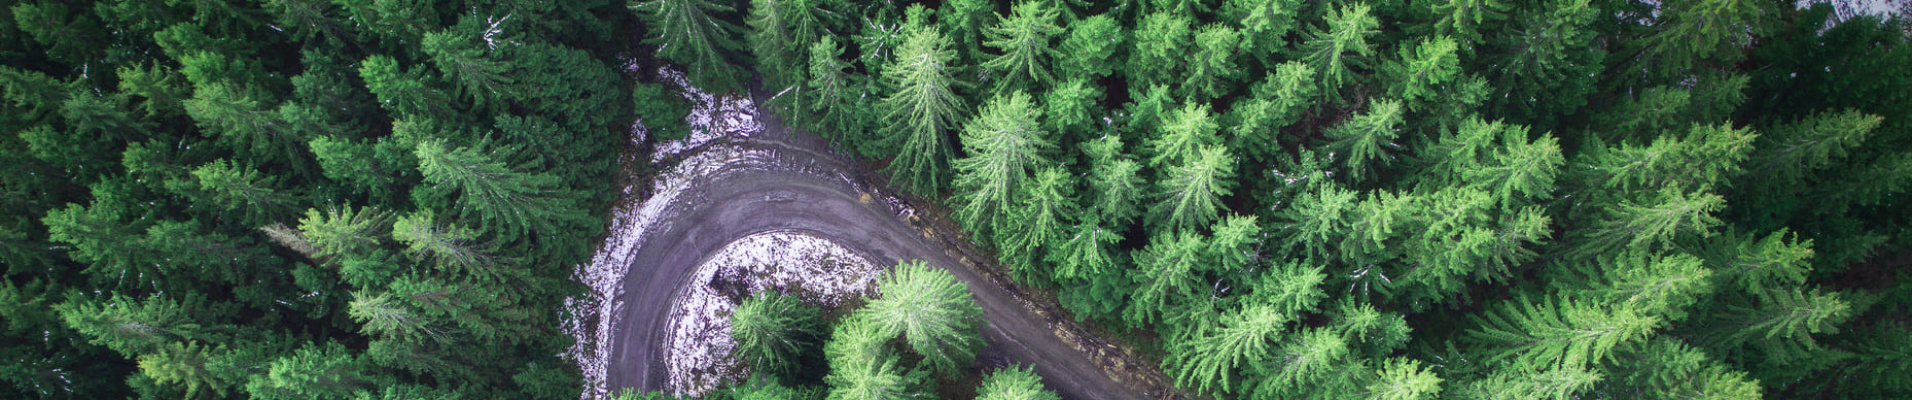 Route dans la forêt en Norvège prise d'un drone